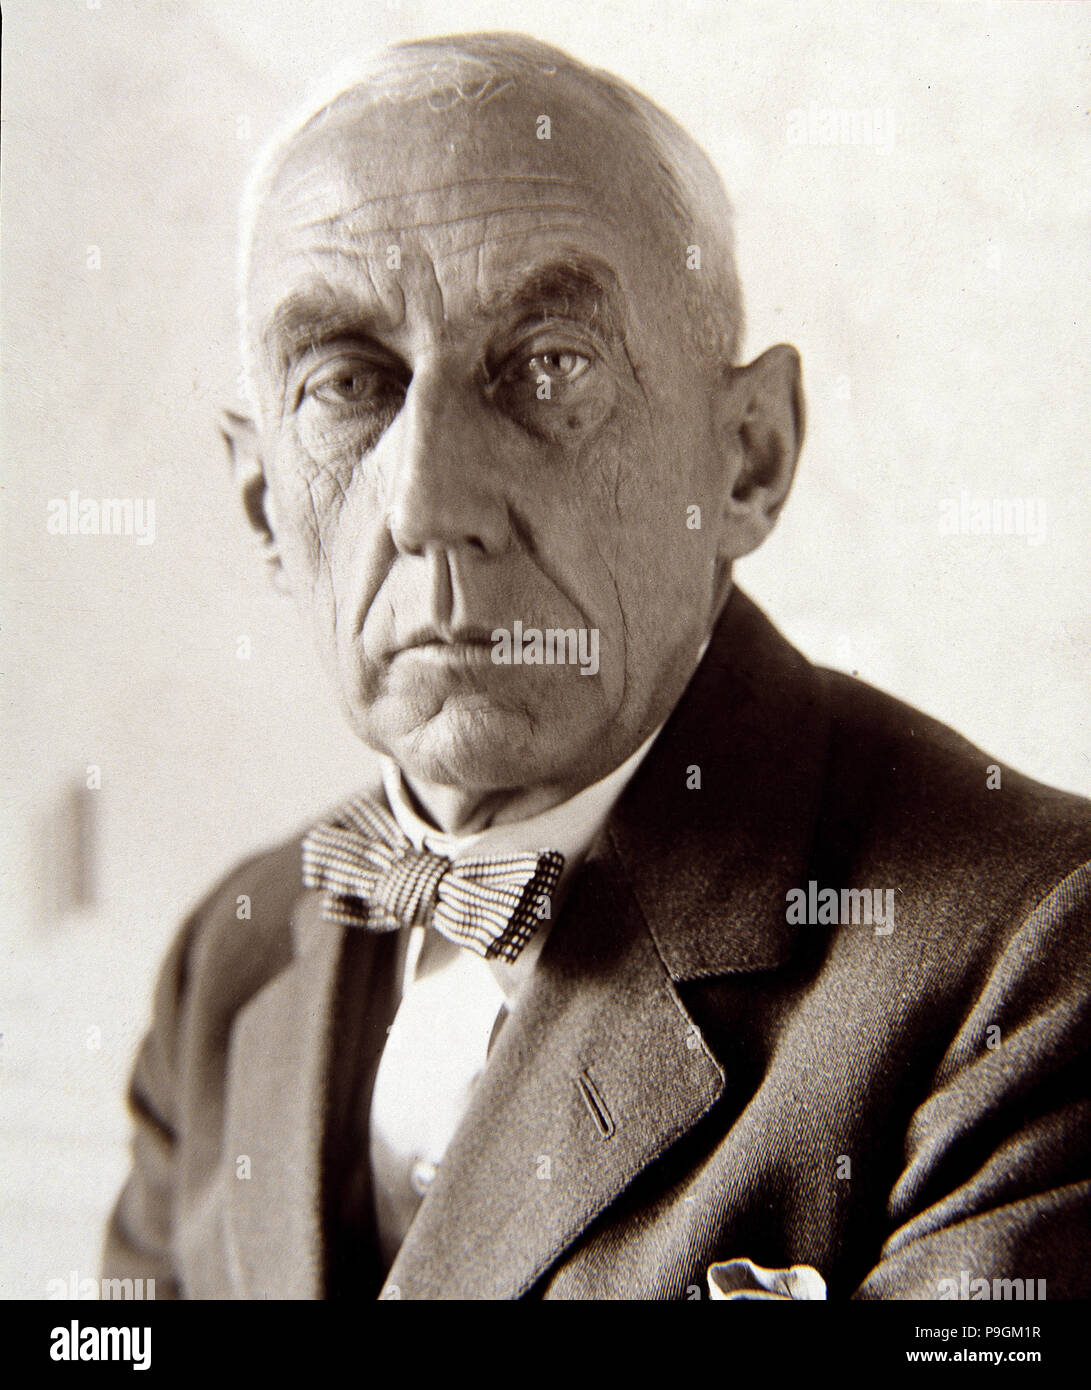 Roald Amundsen (1872-1928), Norwegian explorer. Stock Photo